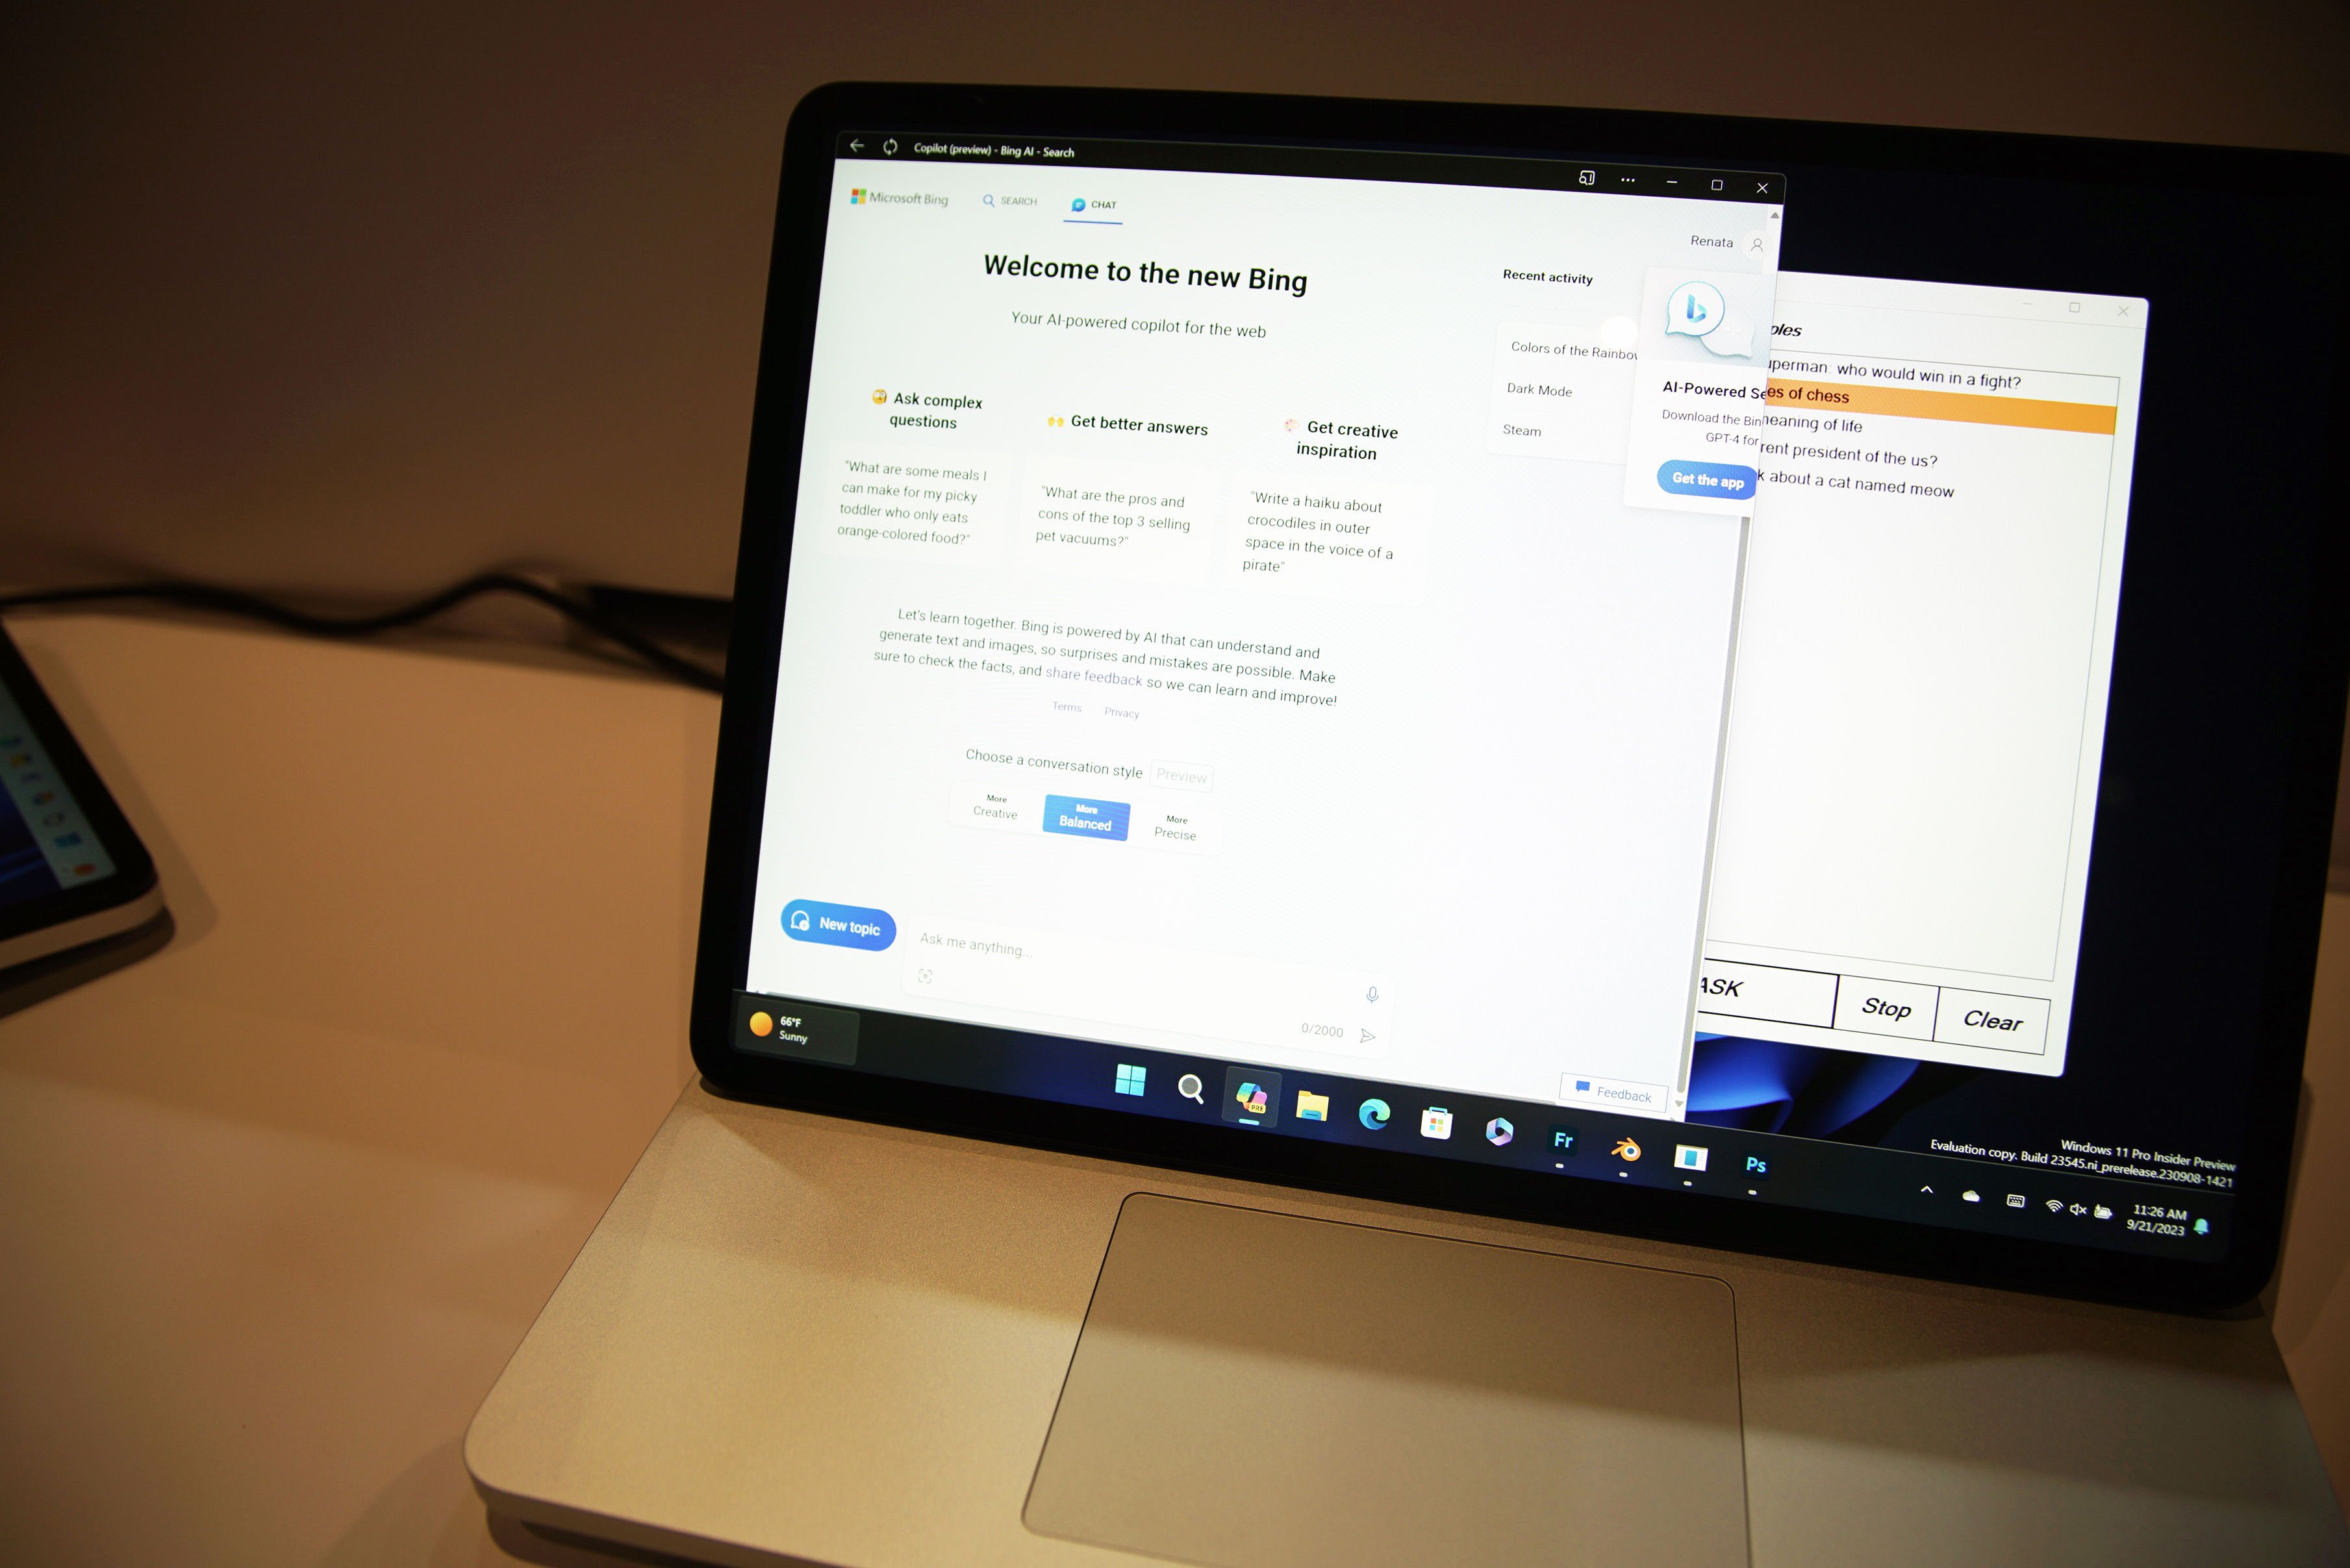 नया बिंग चैट माइक्रोसॉफ्ट लैपटॉप स्टूडियो 2 पर चल रहा है।